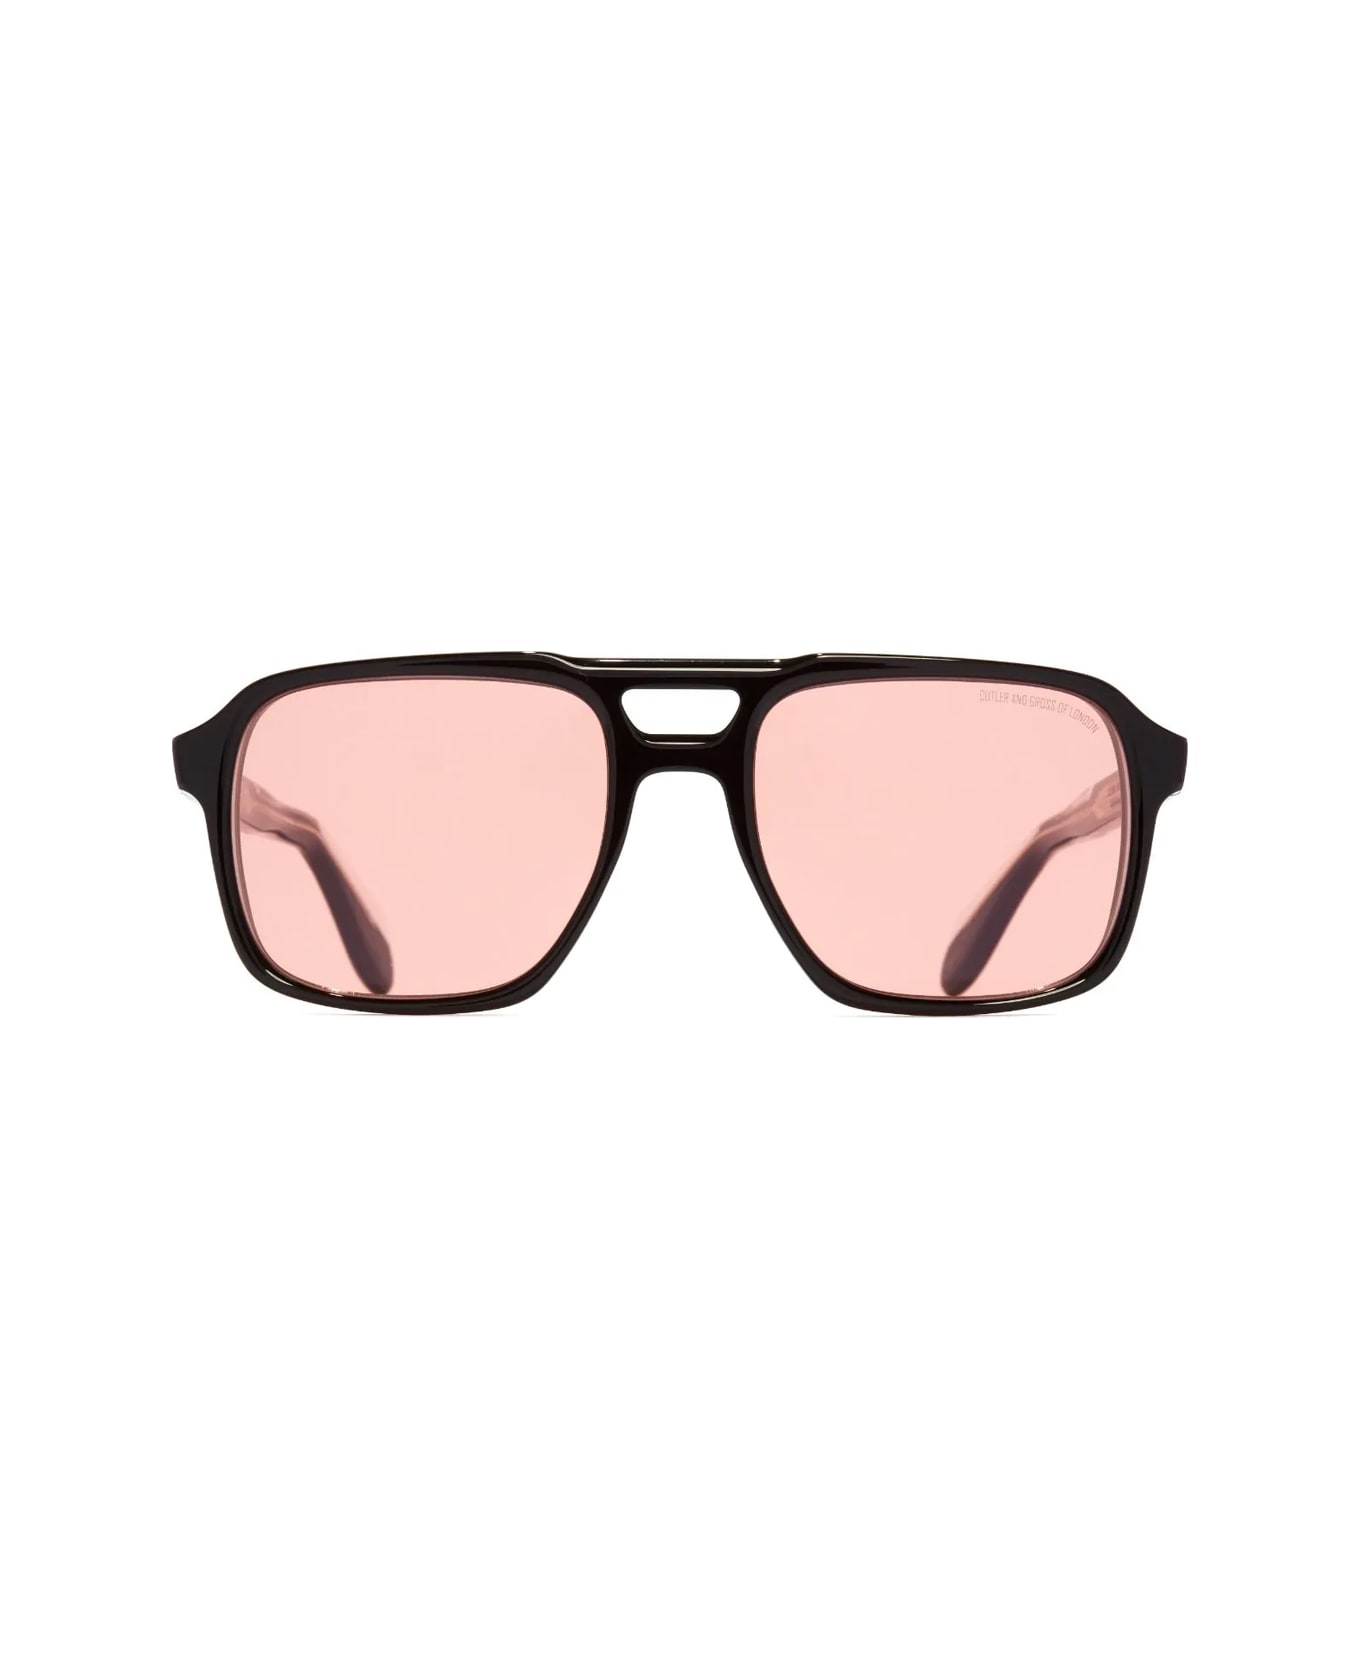 Cutler and Gross 1394 06 Sunglasses - Nero サングラス